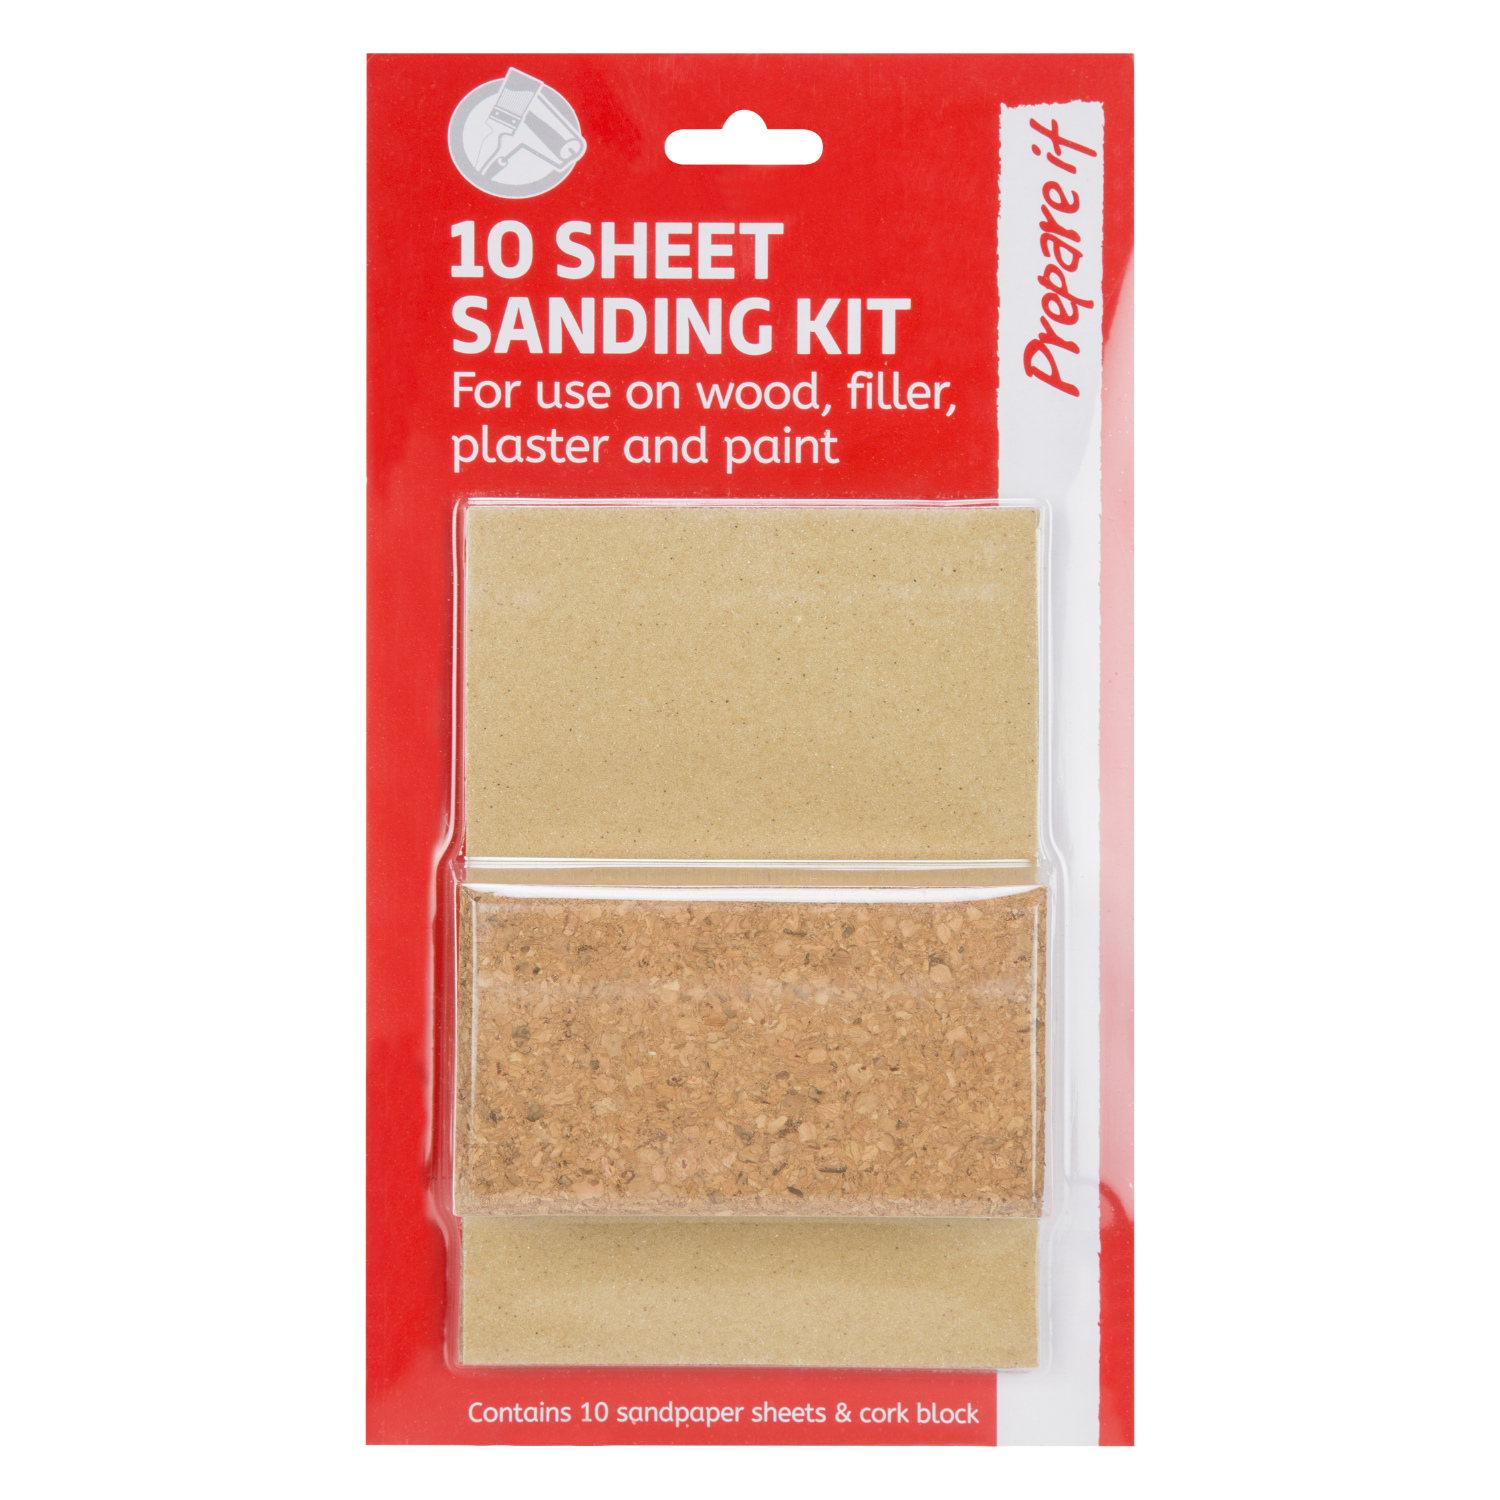 Prepare It Sanding Kit 10 Pack Image